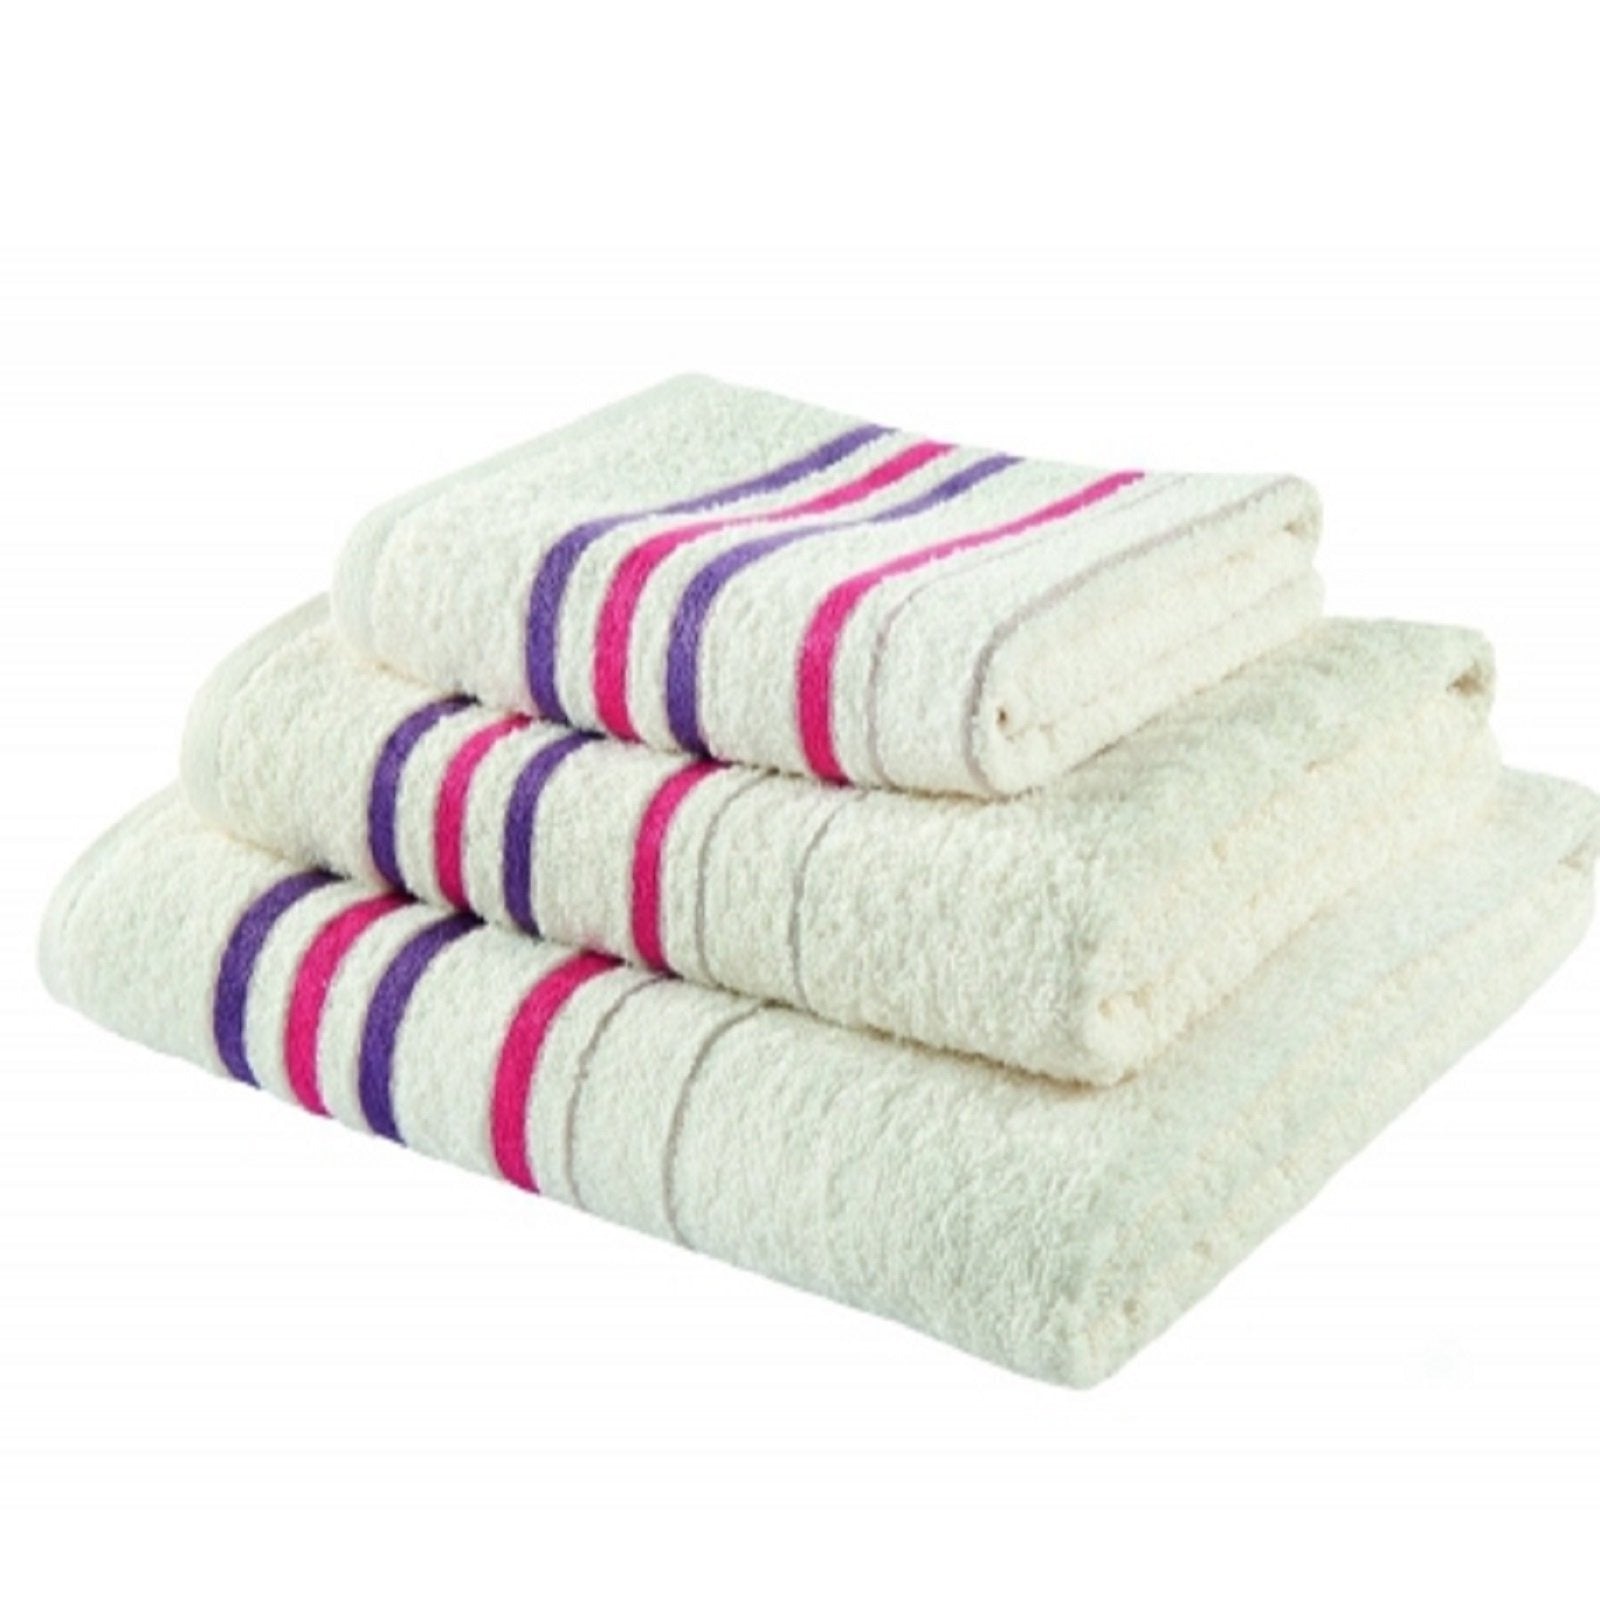 Java 450g Towels, 4 Colours - 2 Sizes